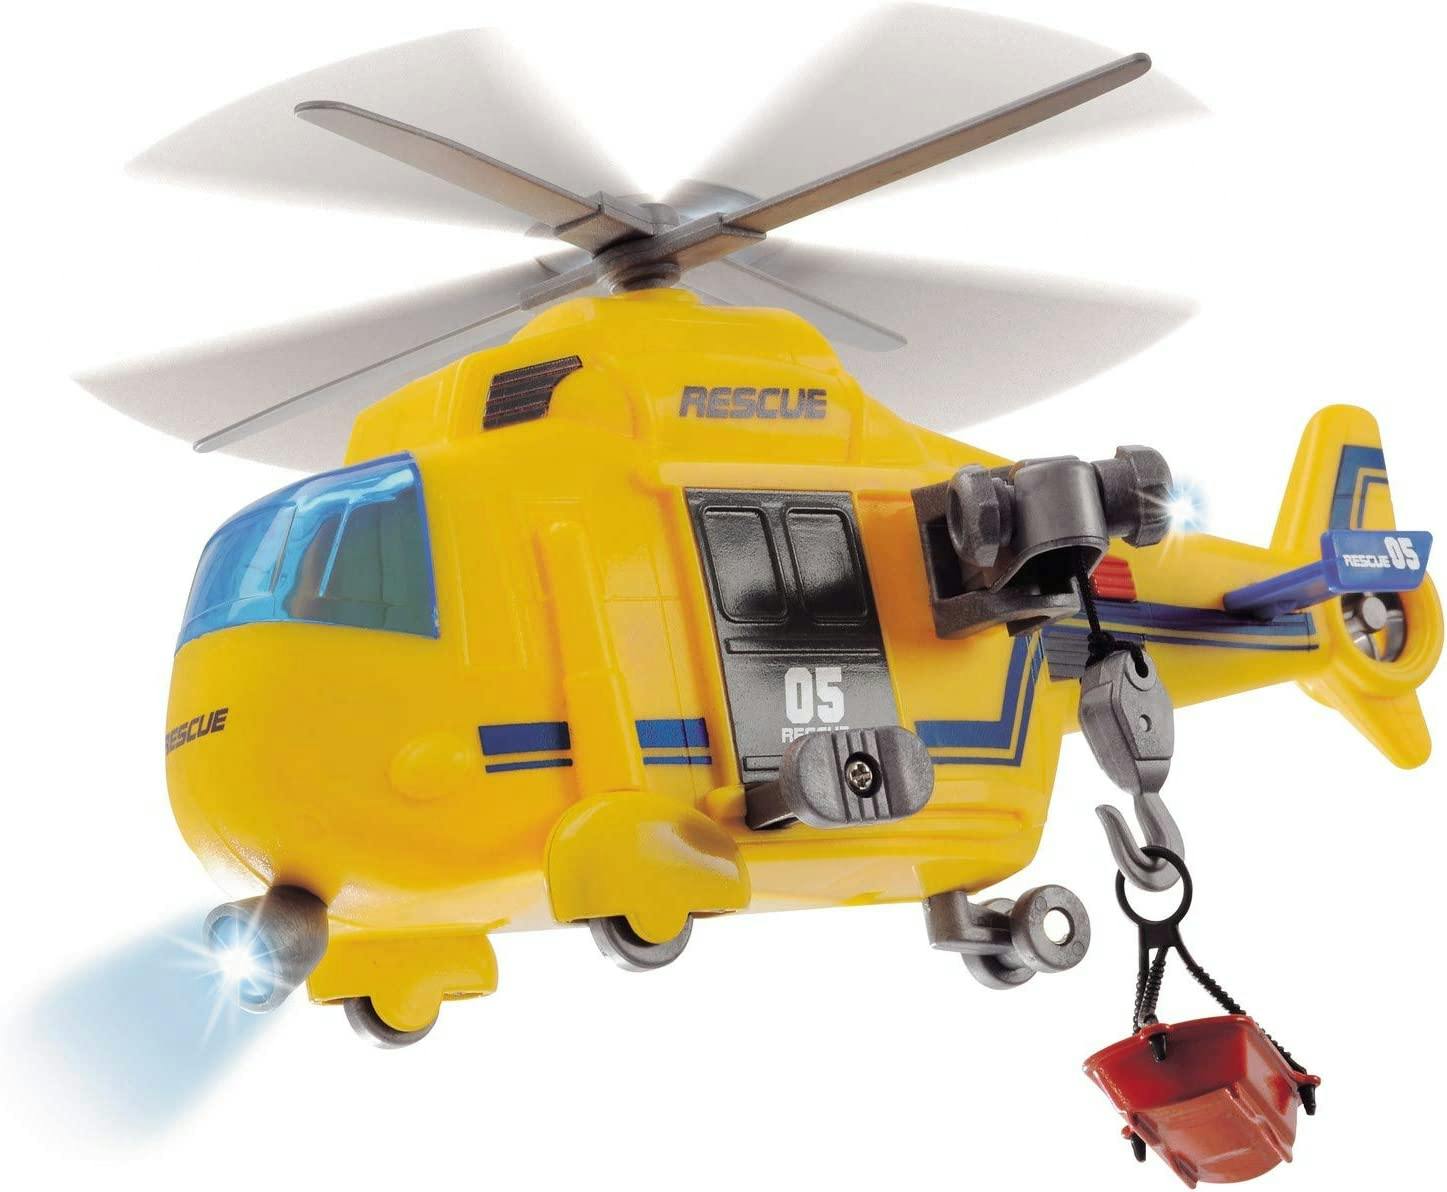 Dickie Toys Räddningshelikopter med frihjul, ljus, vinsh och rörliga rotorblad